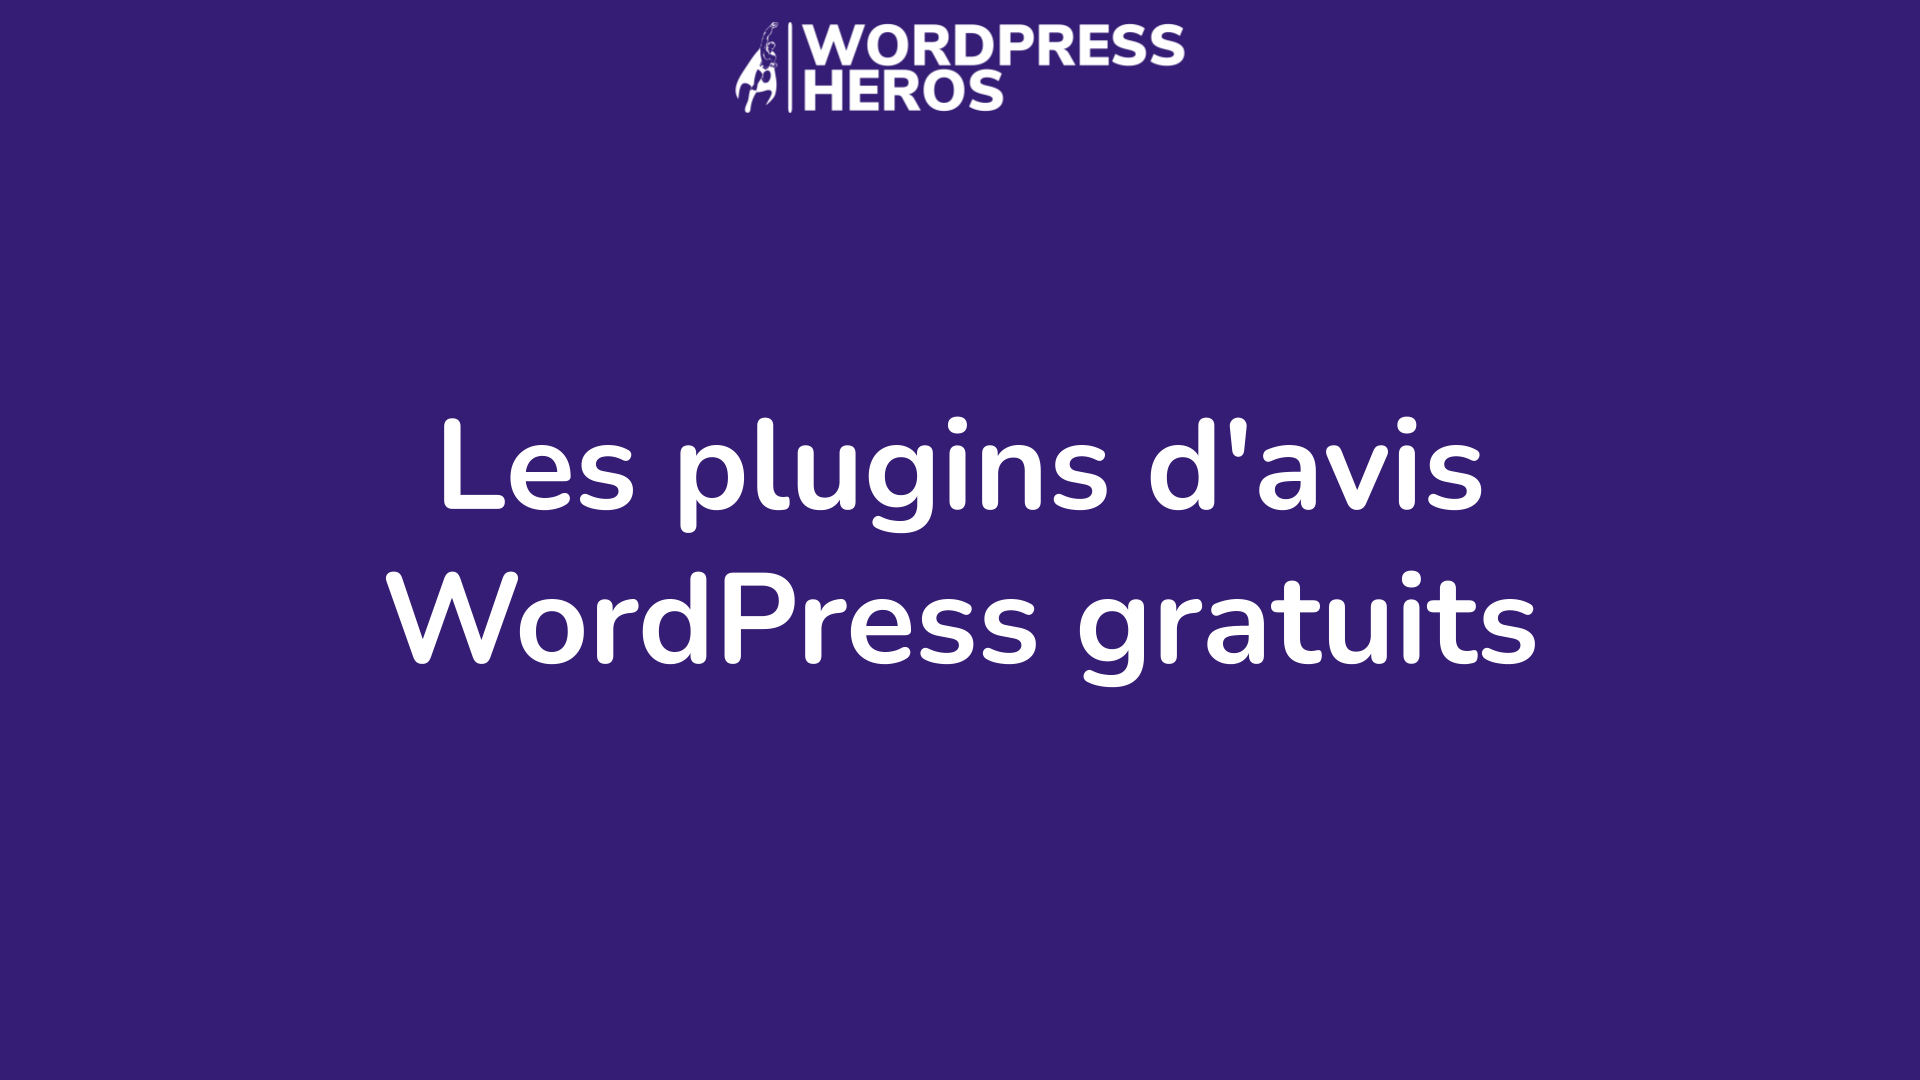 Les plugins d'avis WordPress gratuits